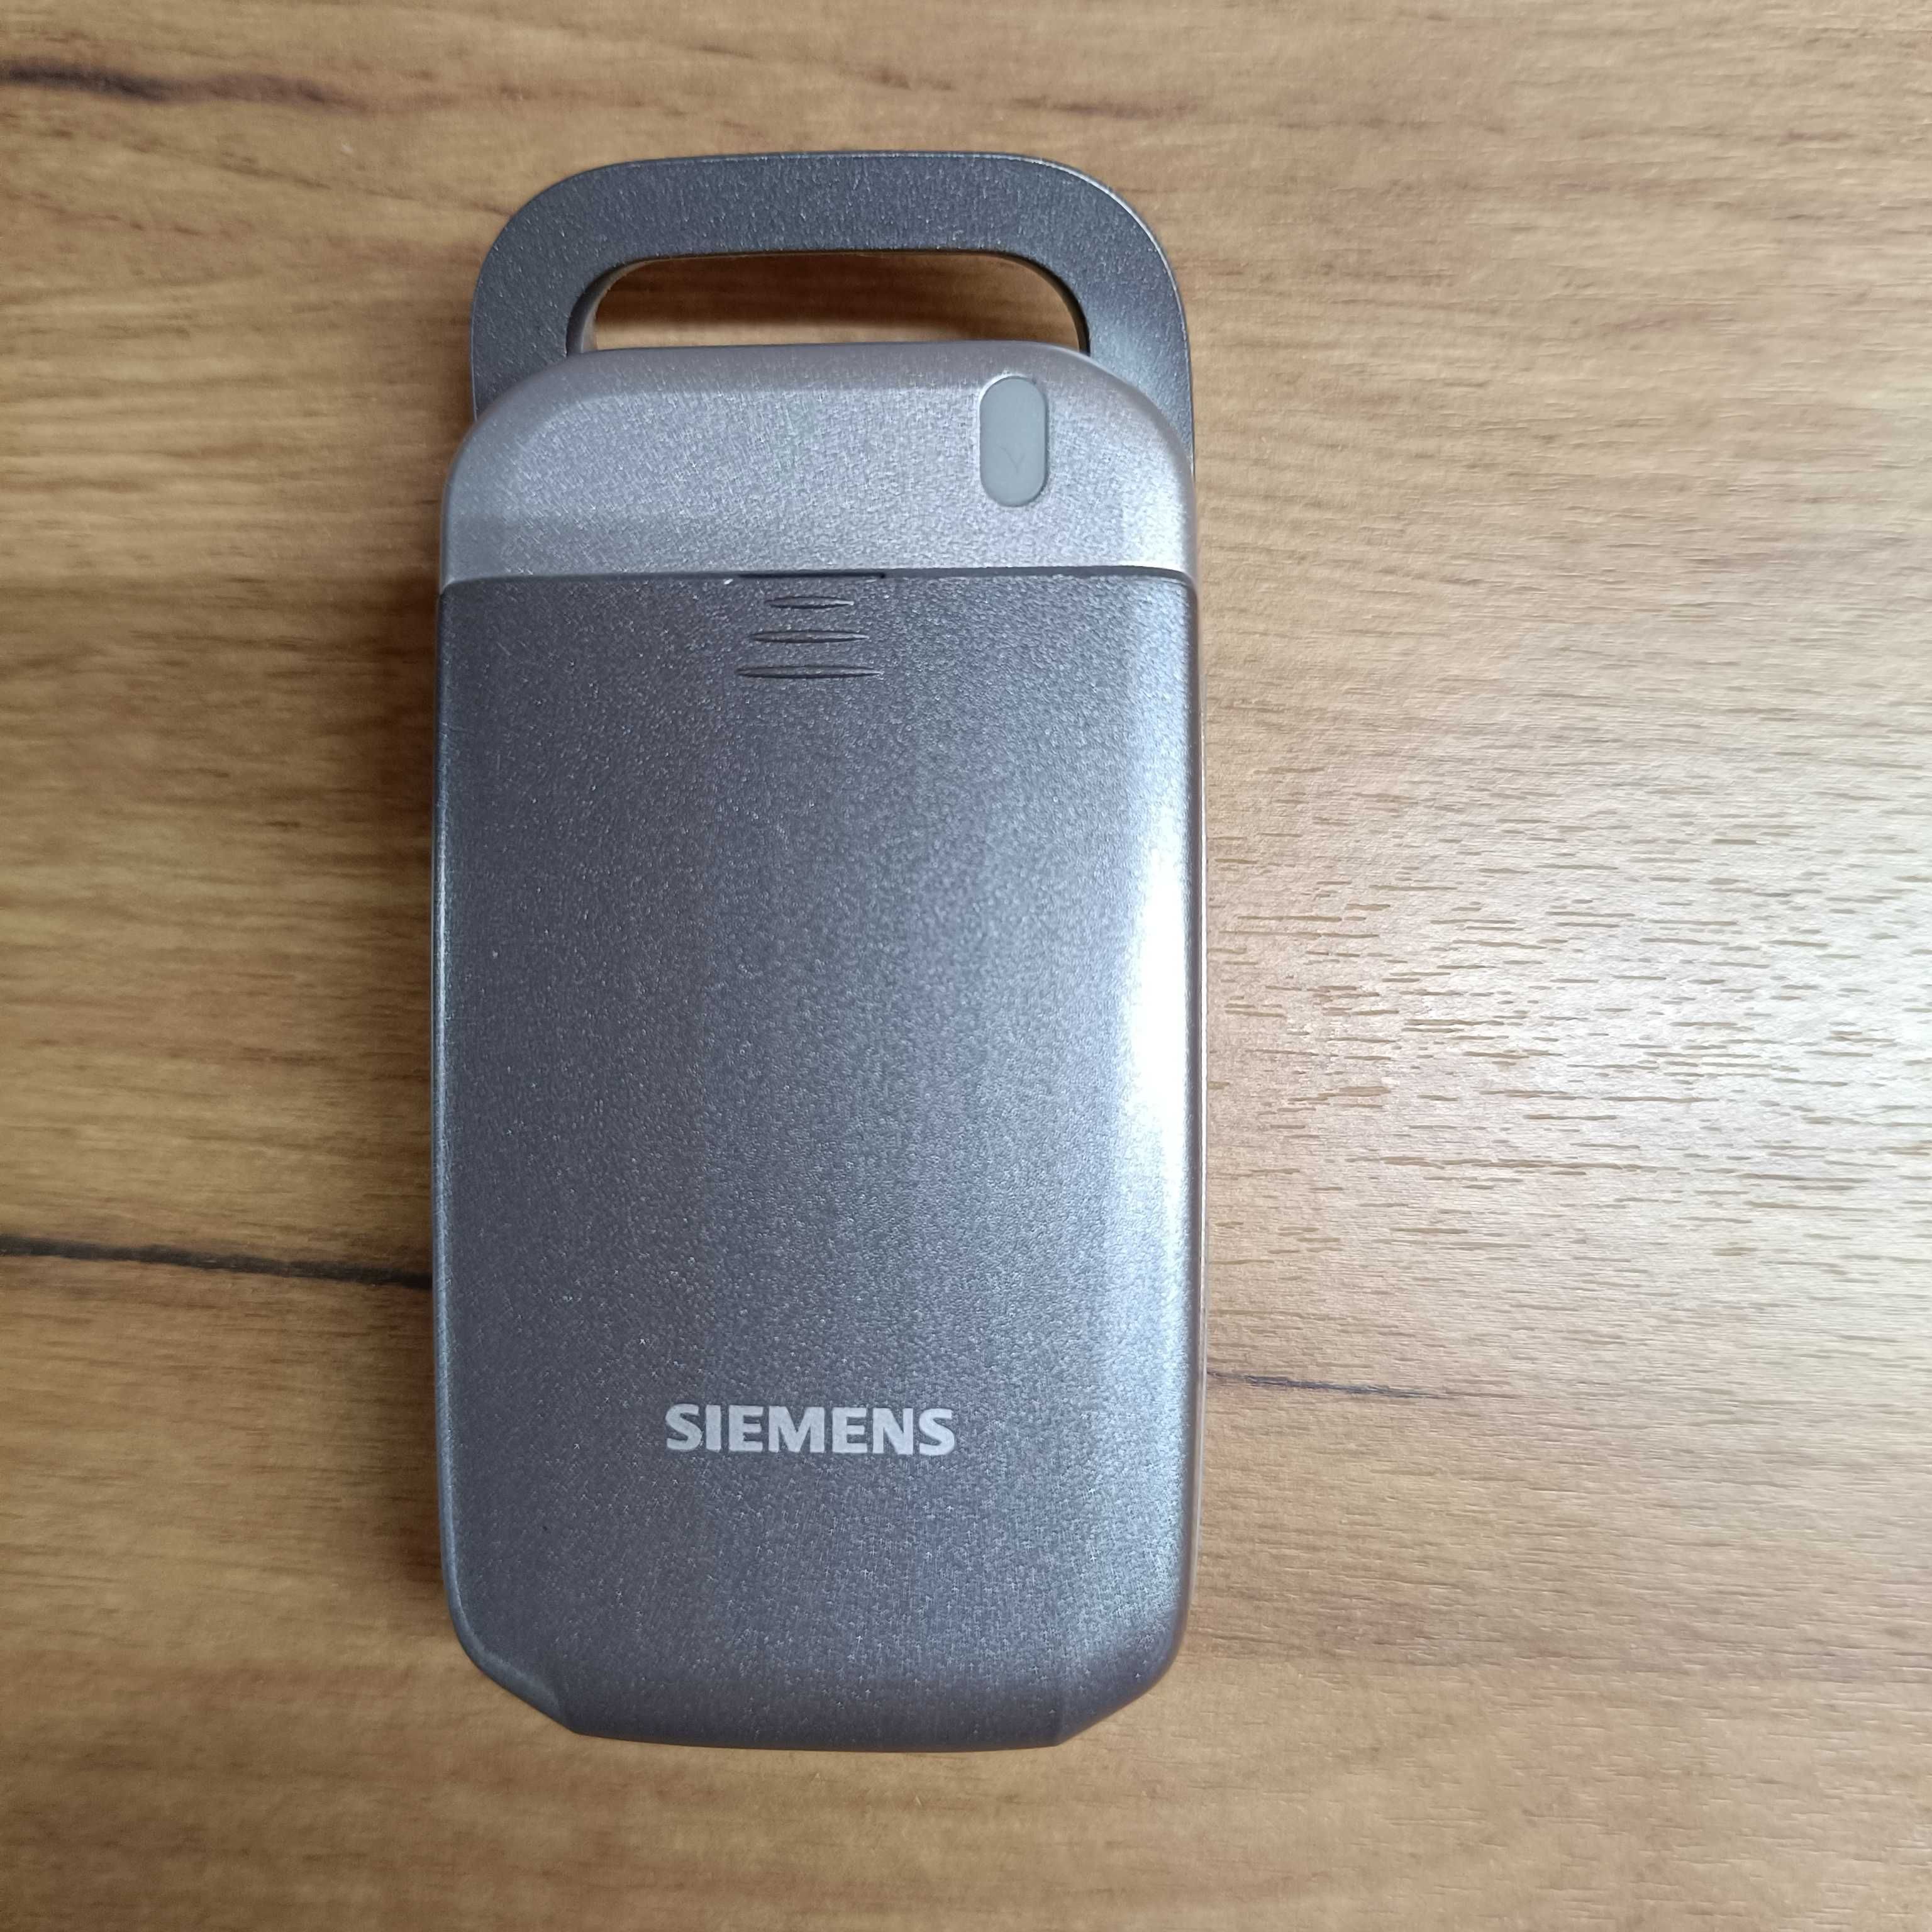 Unikatowy telefon Siemens CF62 *superstan* z folią na wyświetlaczu